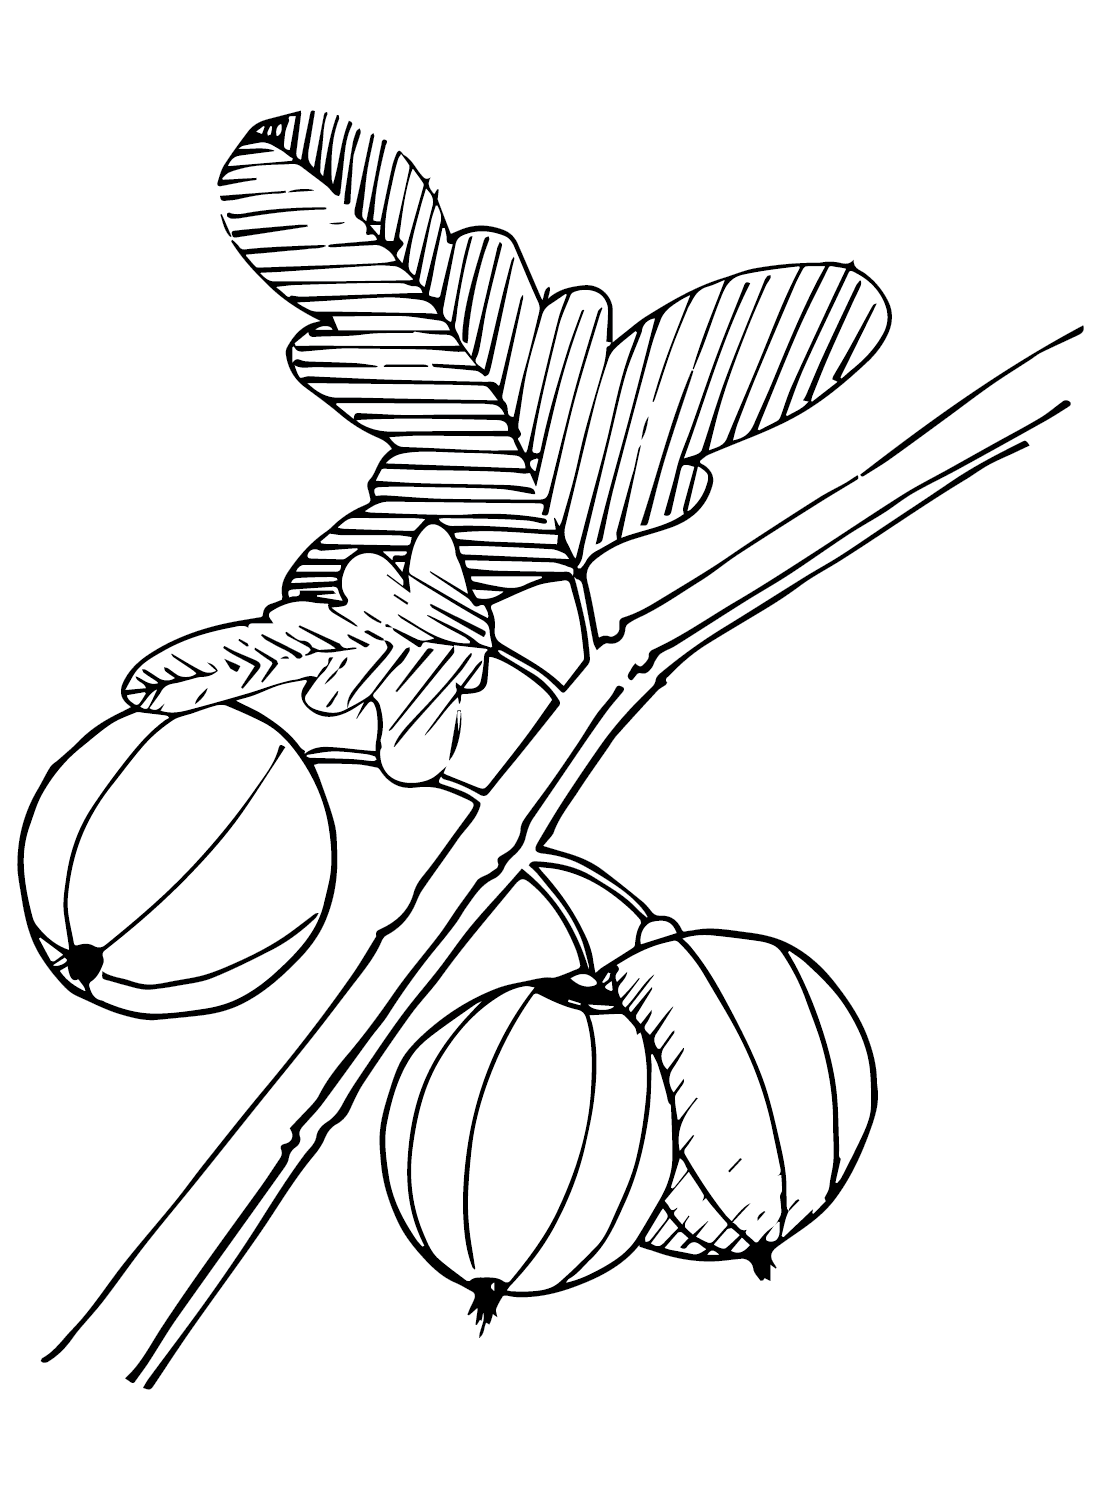 Imágenes de grosella espinosa de grosella espinosa